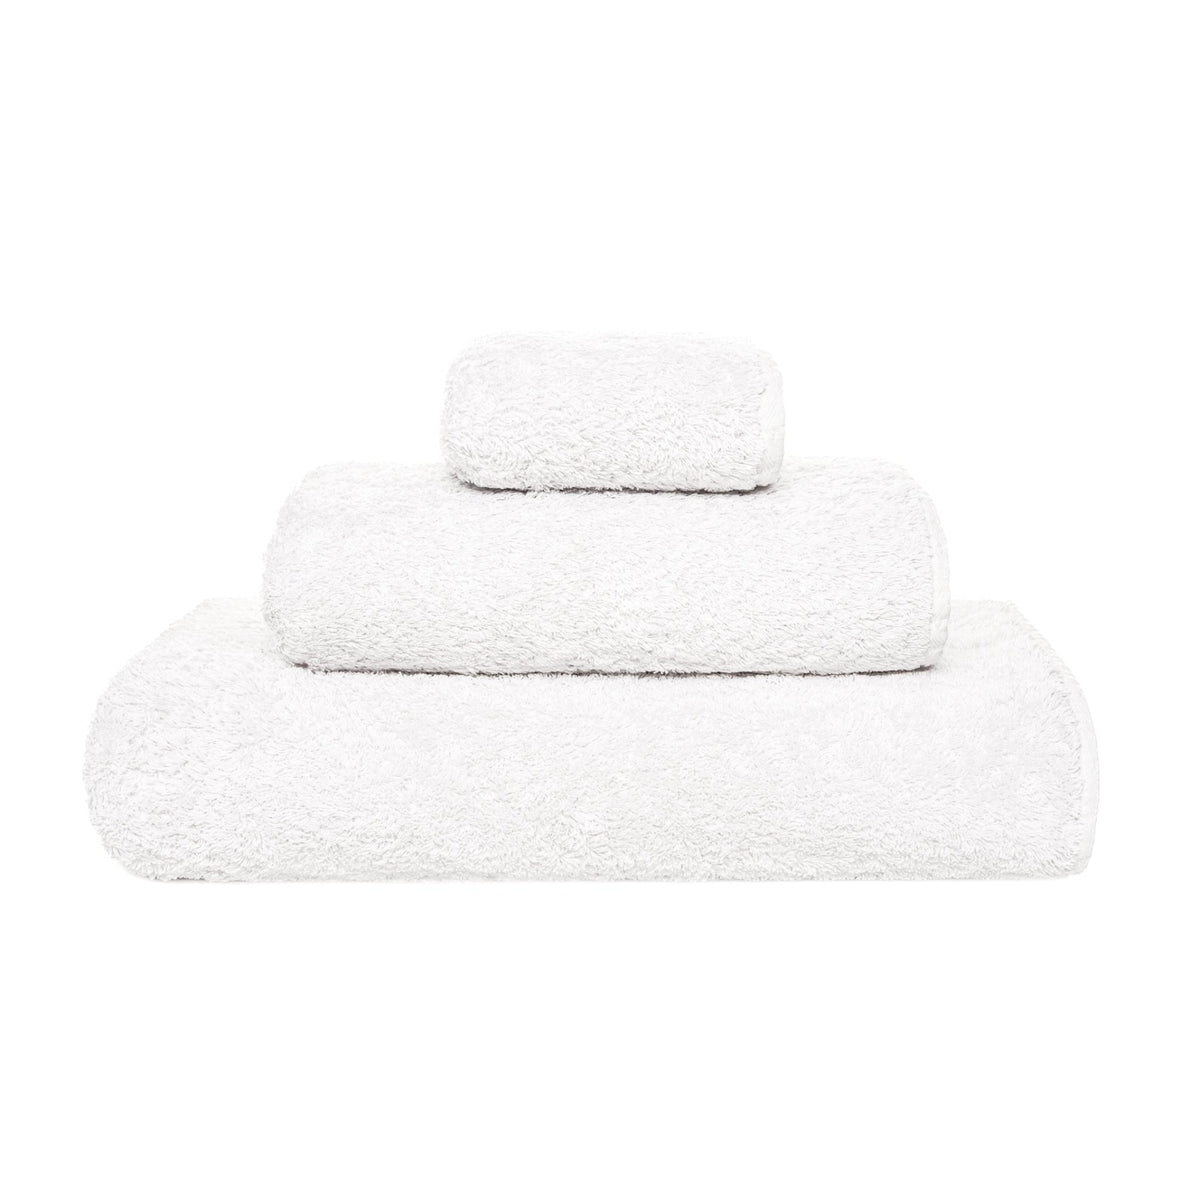 Clear Image of Graccioza Grand Egoist Bath Towels White